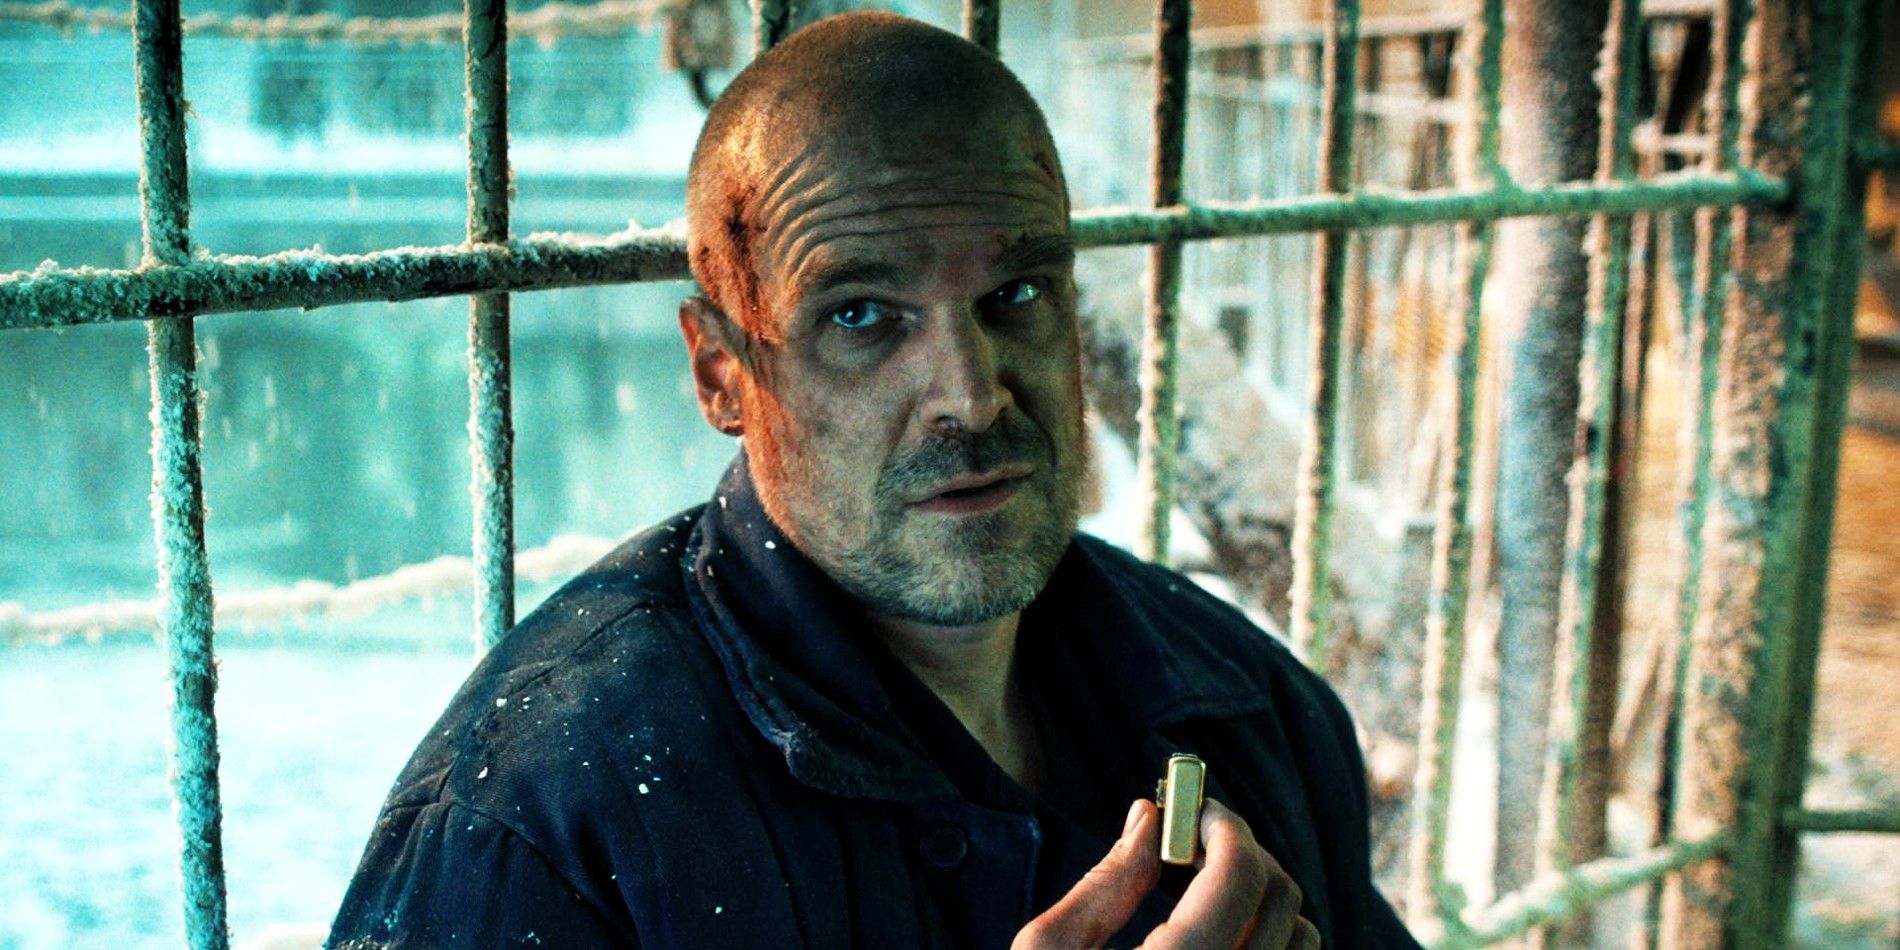 David Harbour as Hopper in Stranger Things season 4 leaning against prison cell bars